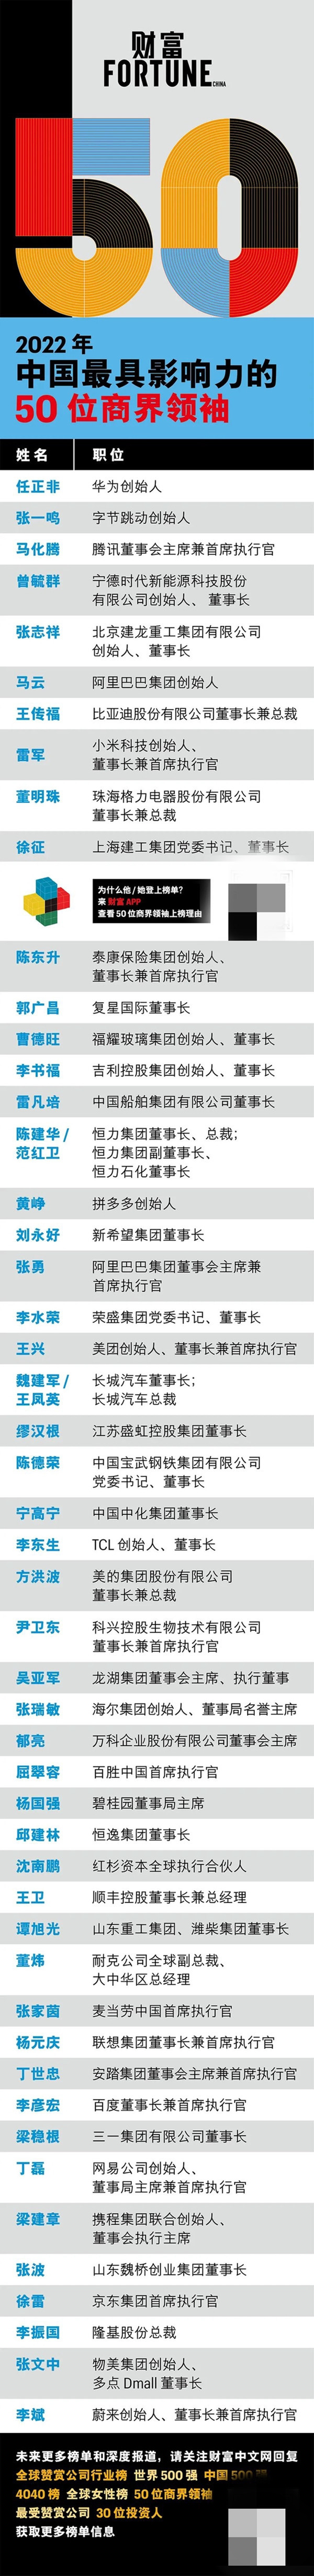 《财富》中国最具影响力商业领袖排名：马化腾第三